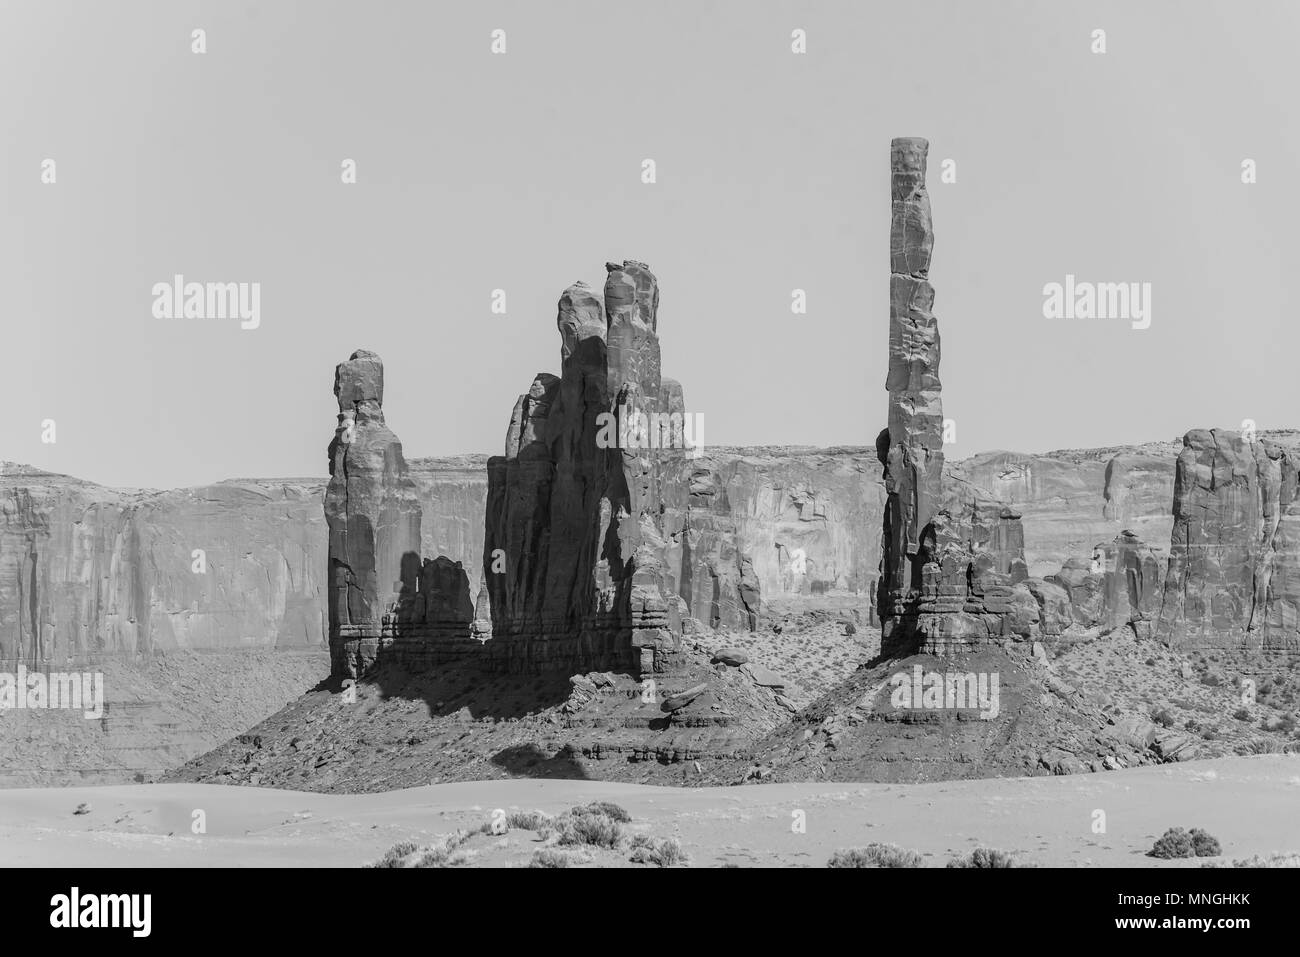 Landschaftlich reizvolle Fahrt über unbefestigte Straße durch das Monument Valley, den berühmten BUTTES von Navajo Tribal Park, Utah - Arizona, USA. Malerische Straße und rote Felsformationen. Stockfoto